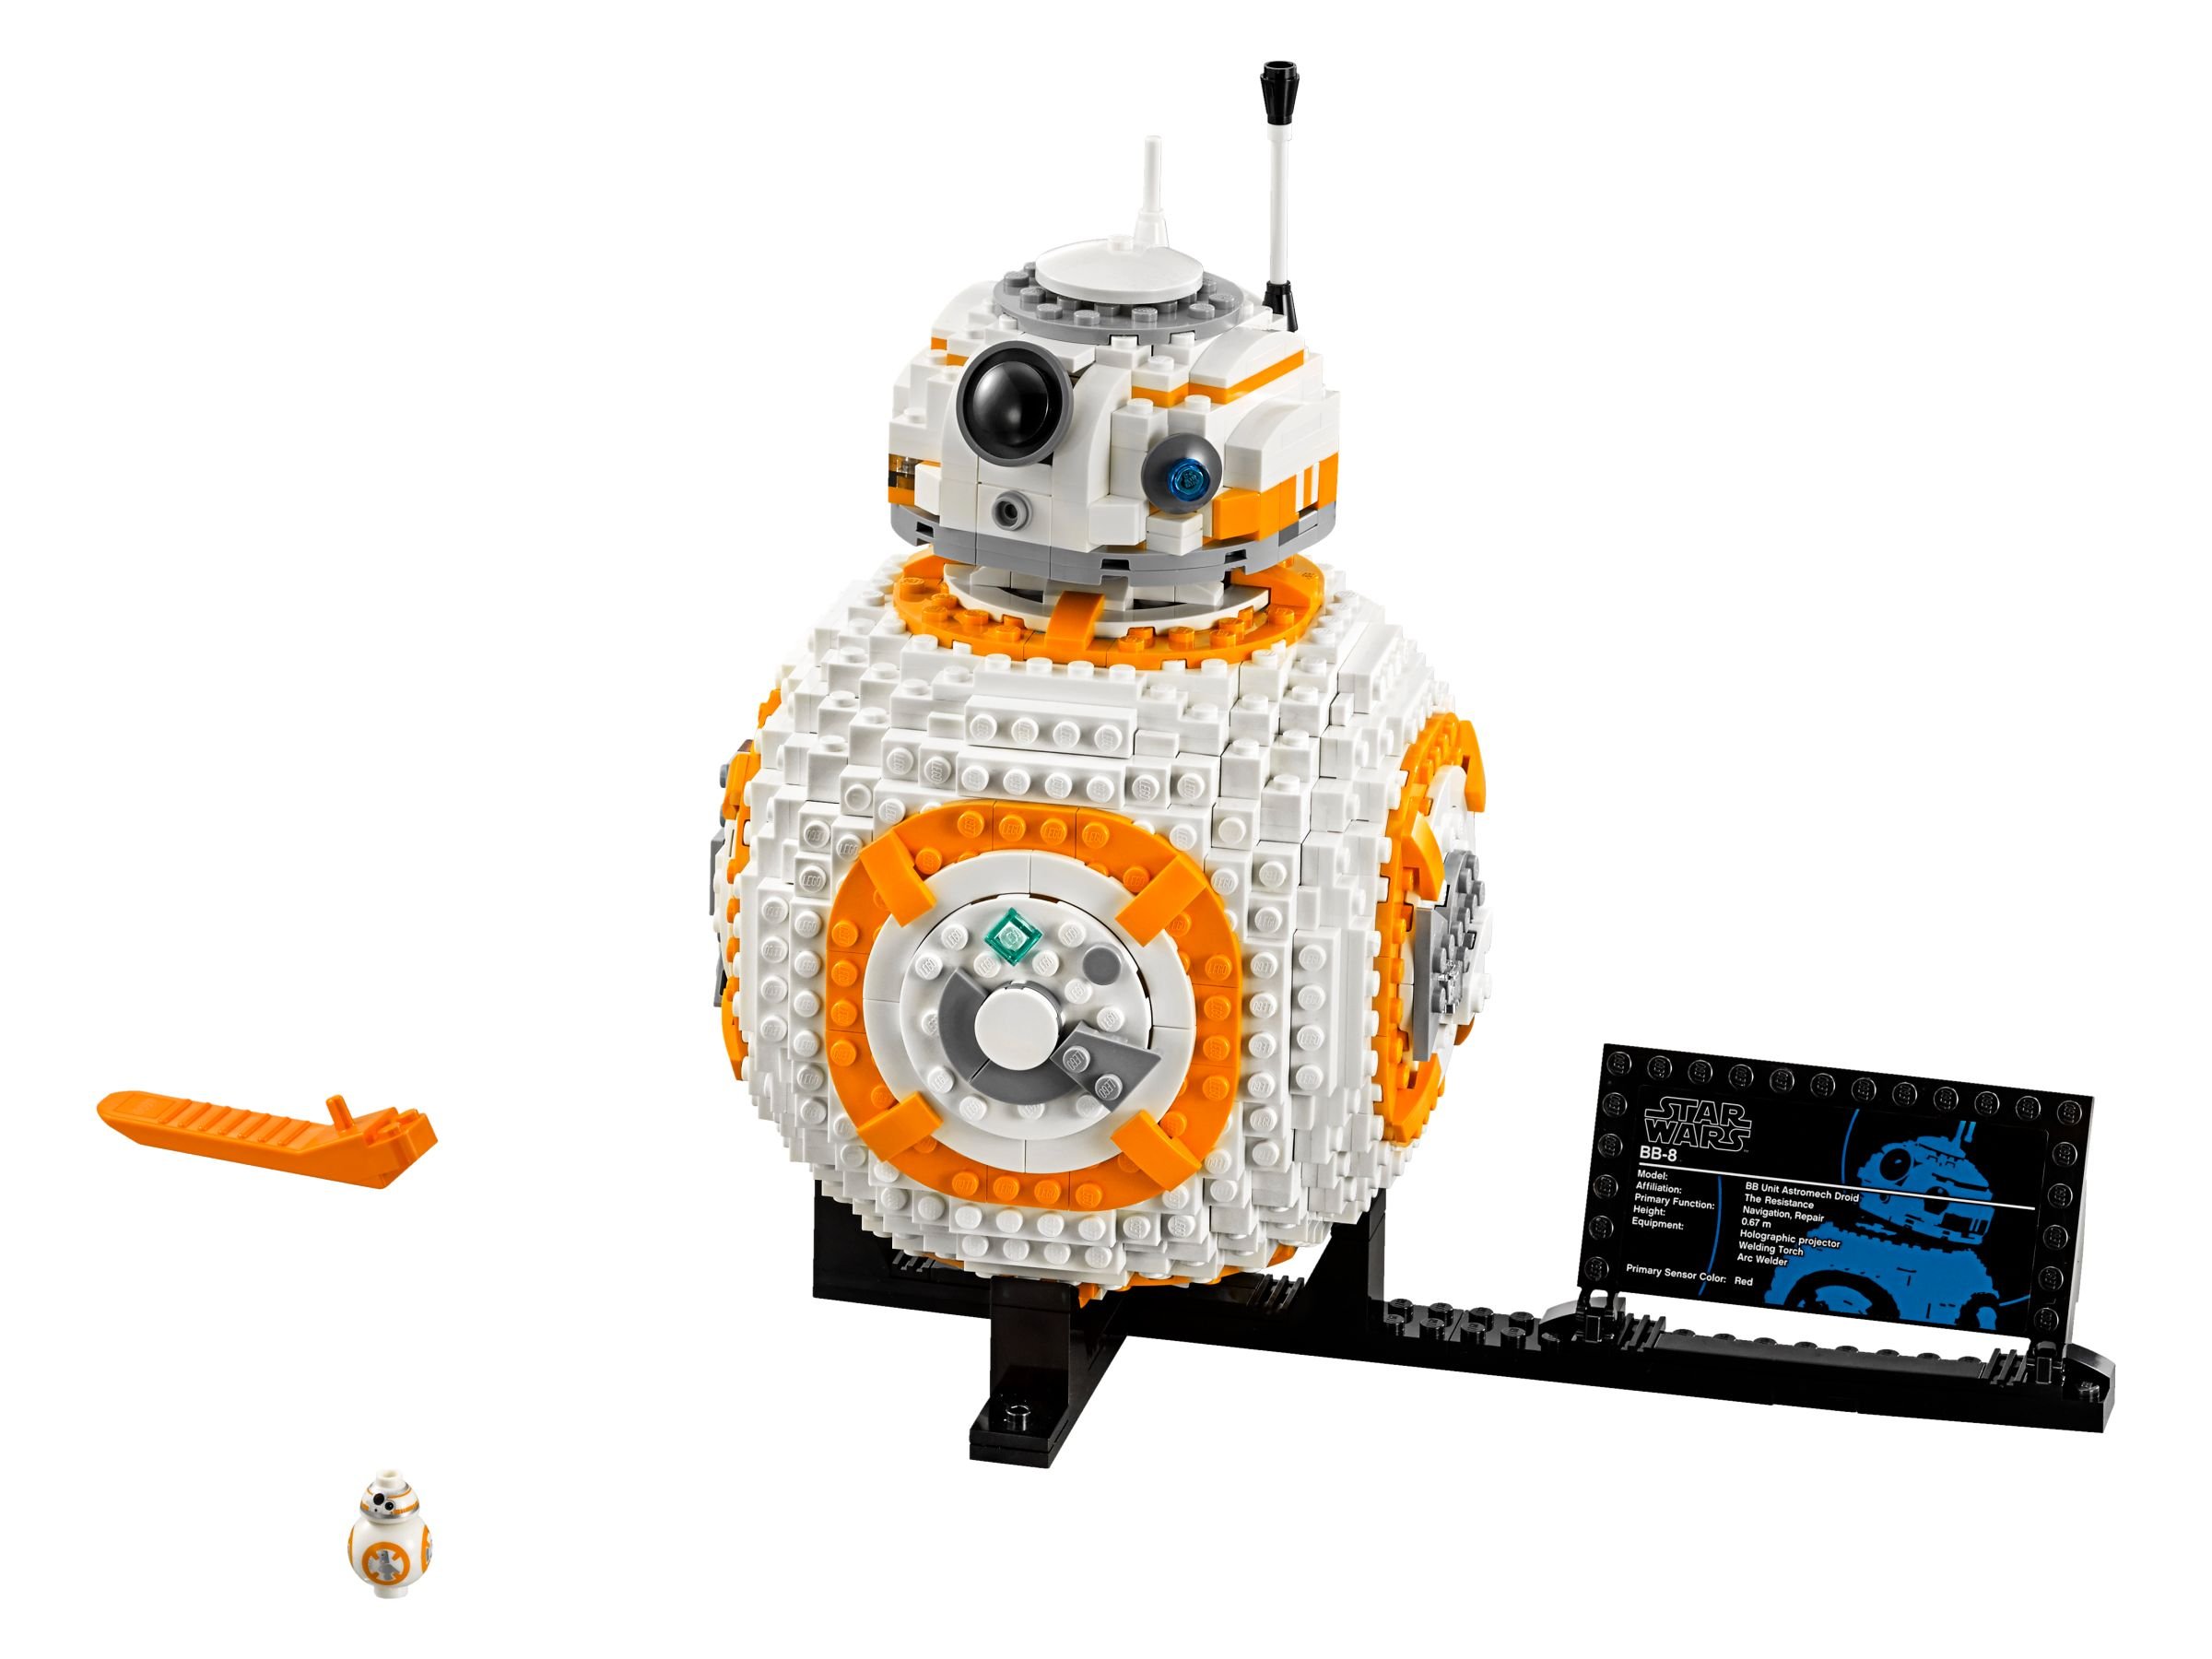 LEGO Star Wars 75187 BB-8™